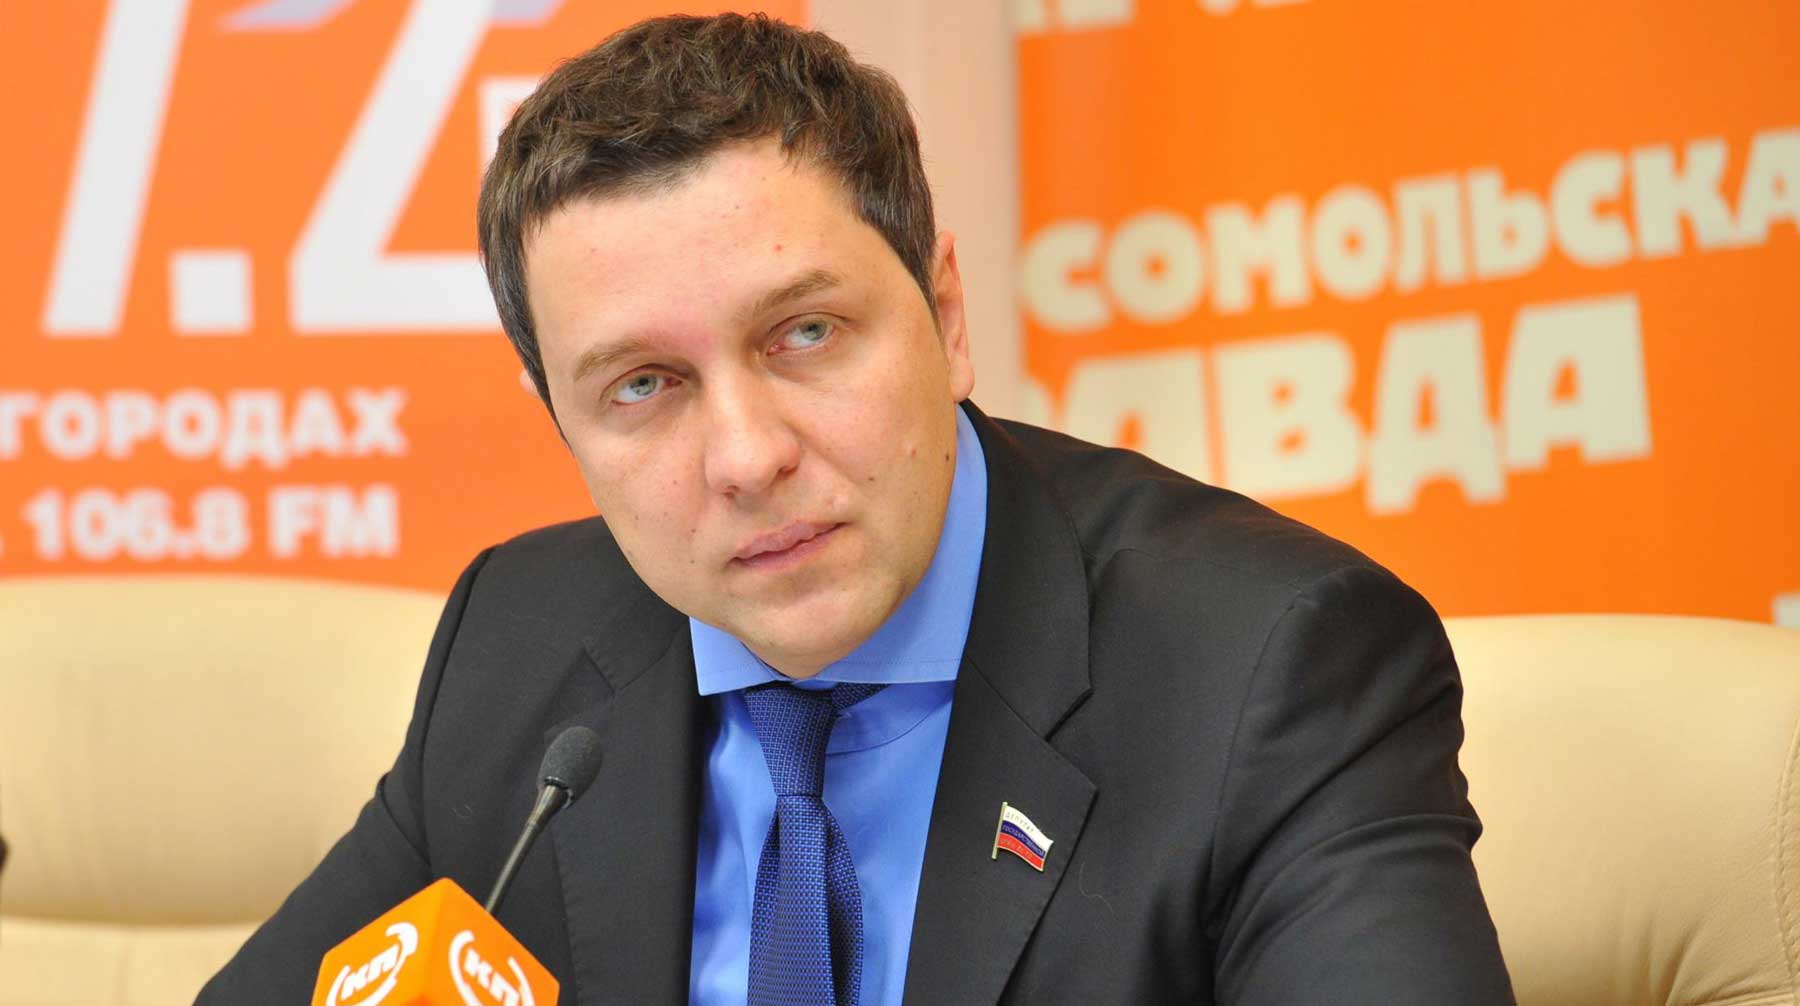 Автор законопроекта Александр Старовойтов от ЛДПР считает, что представителей власти нужно привлекать к ответственности Александр Старовойтов